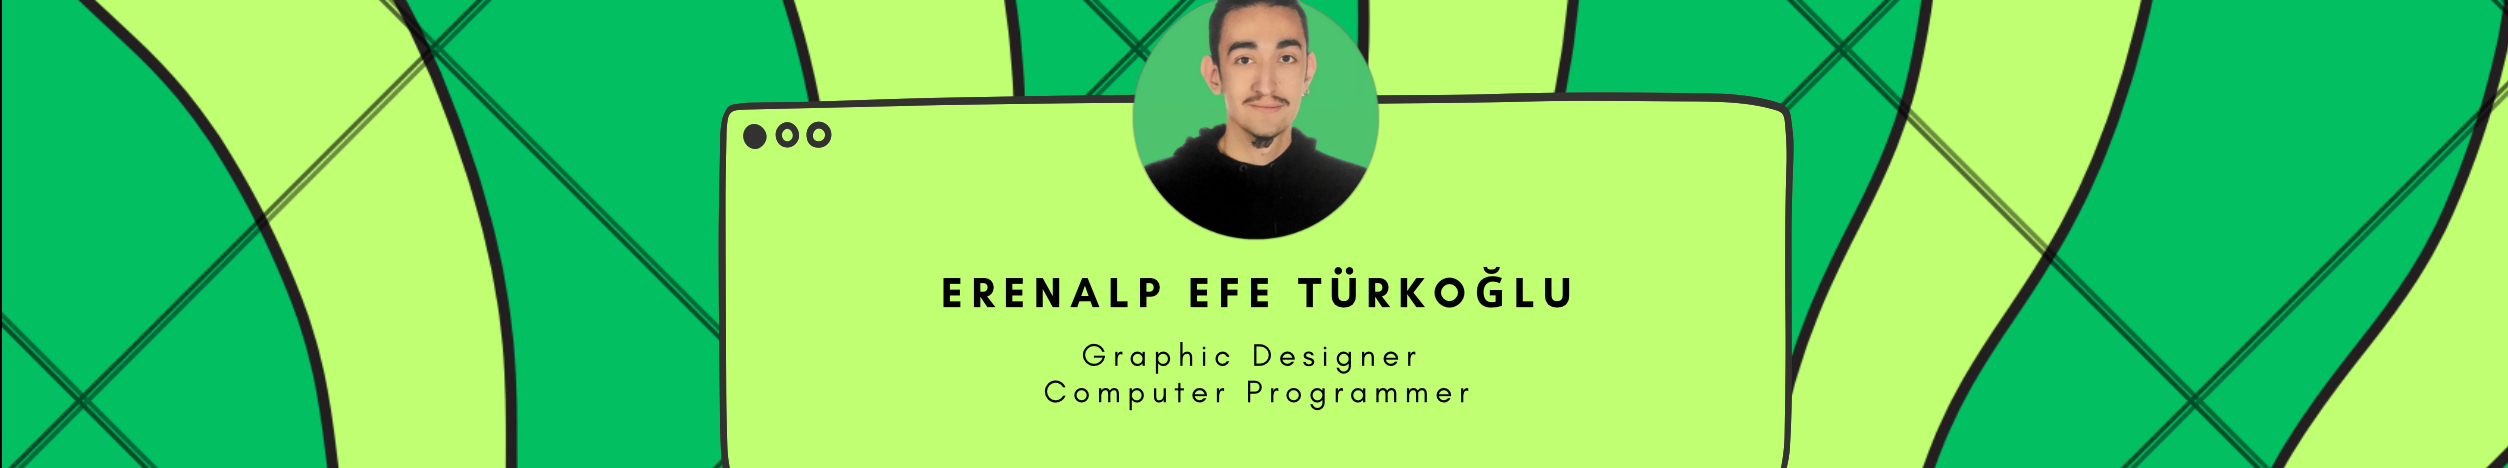 Baner profilu użytkownika Erenalp Efe Türkoğlu